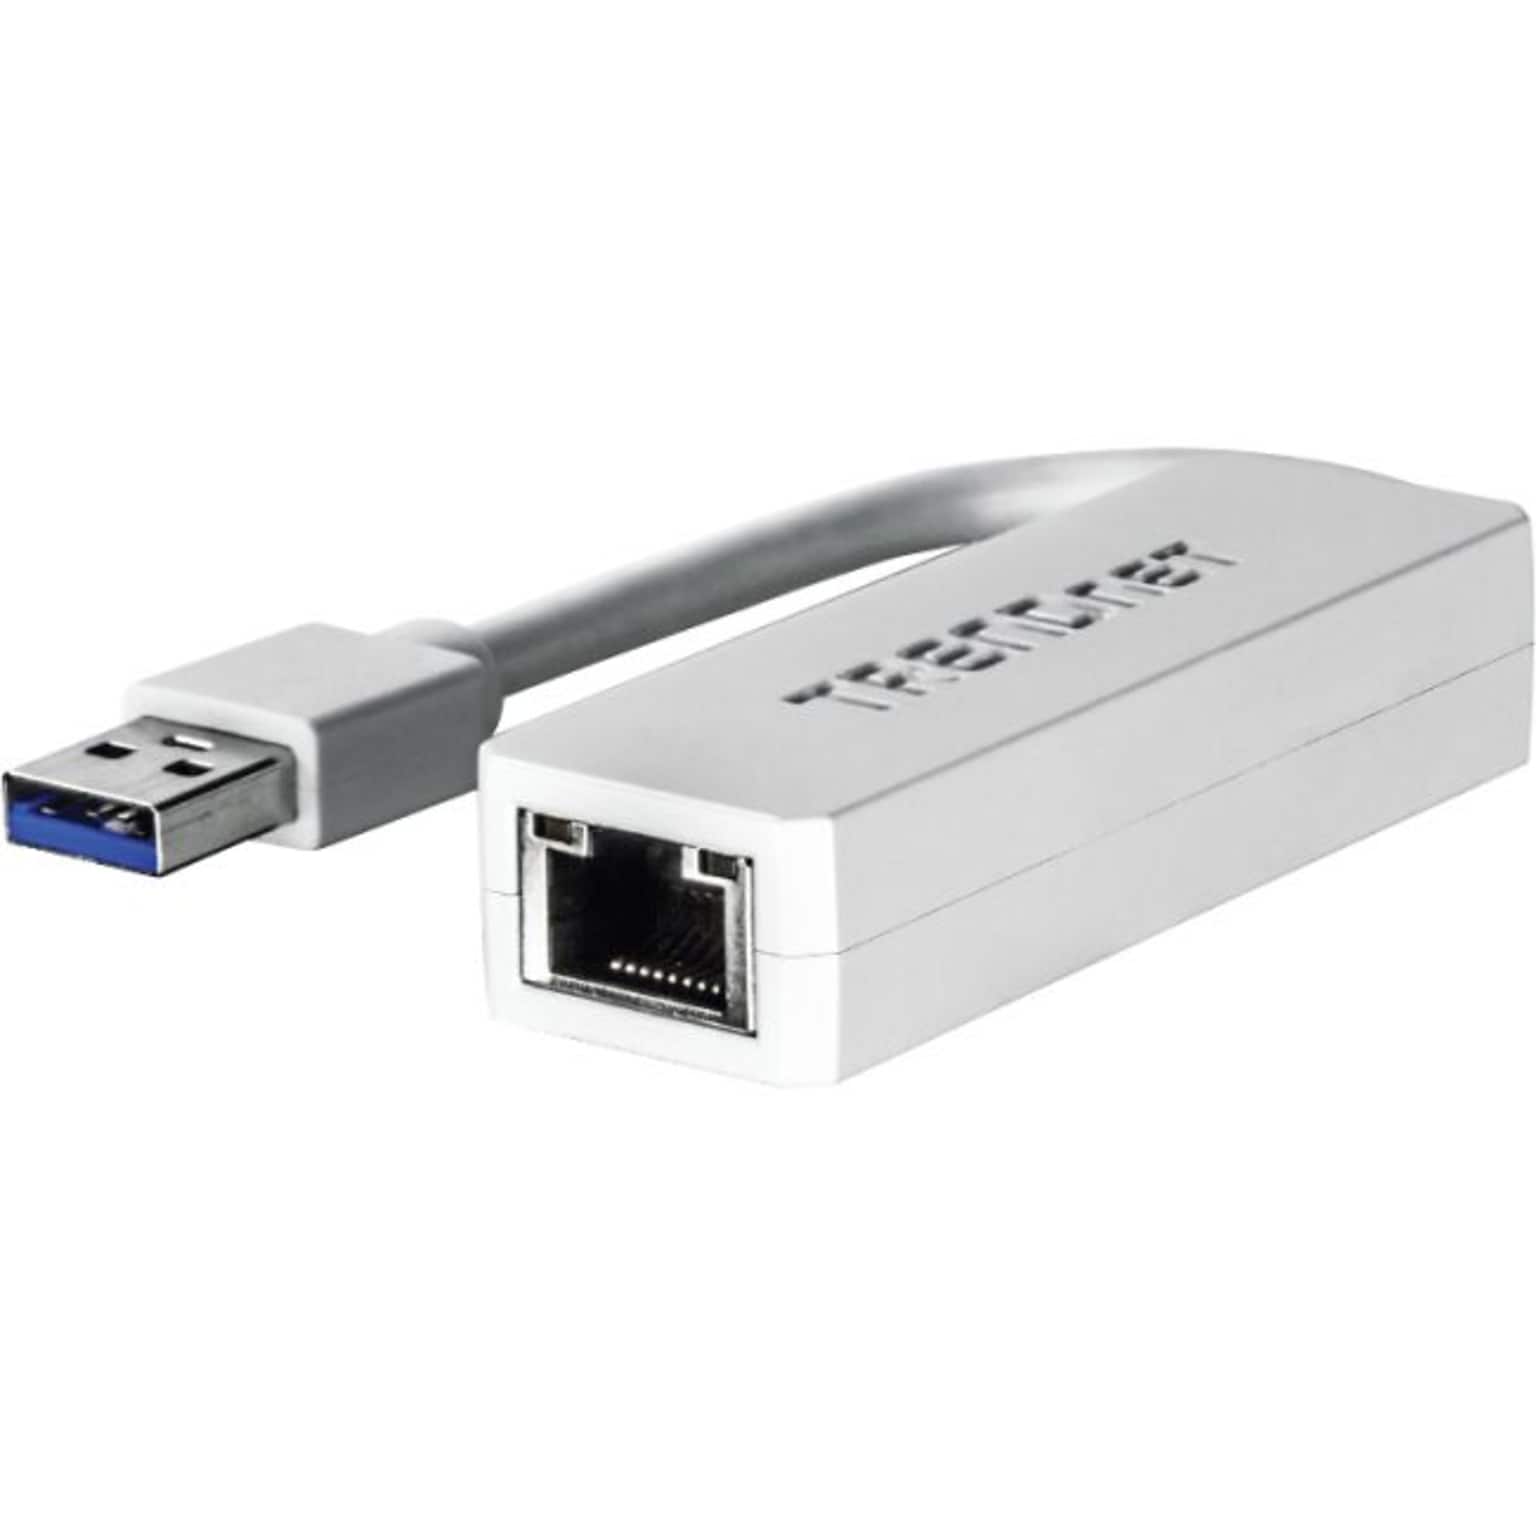 TRENDnet® USB 3.0 to RJ-45 Gigabit Ethernet Adapter